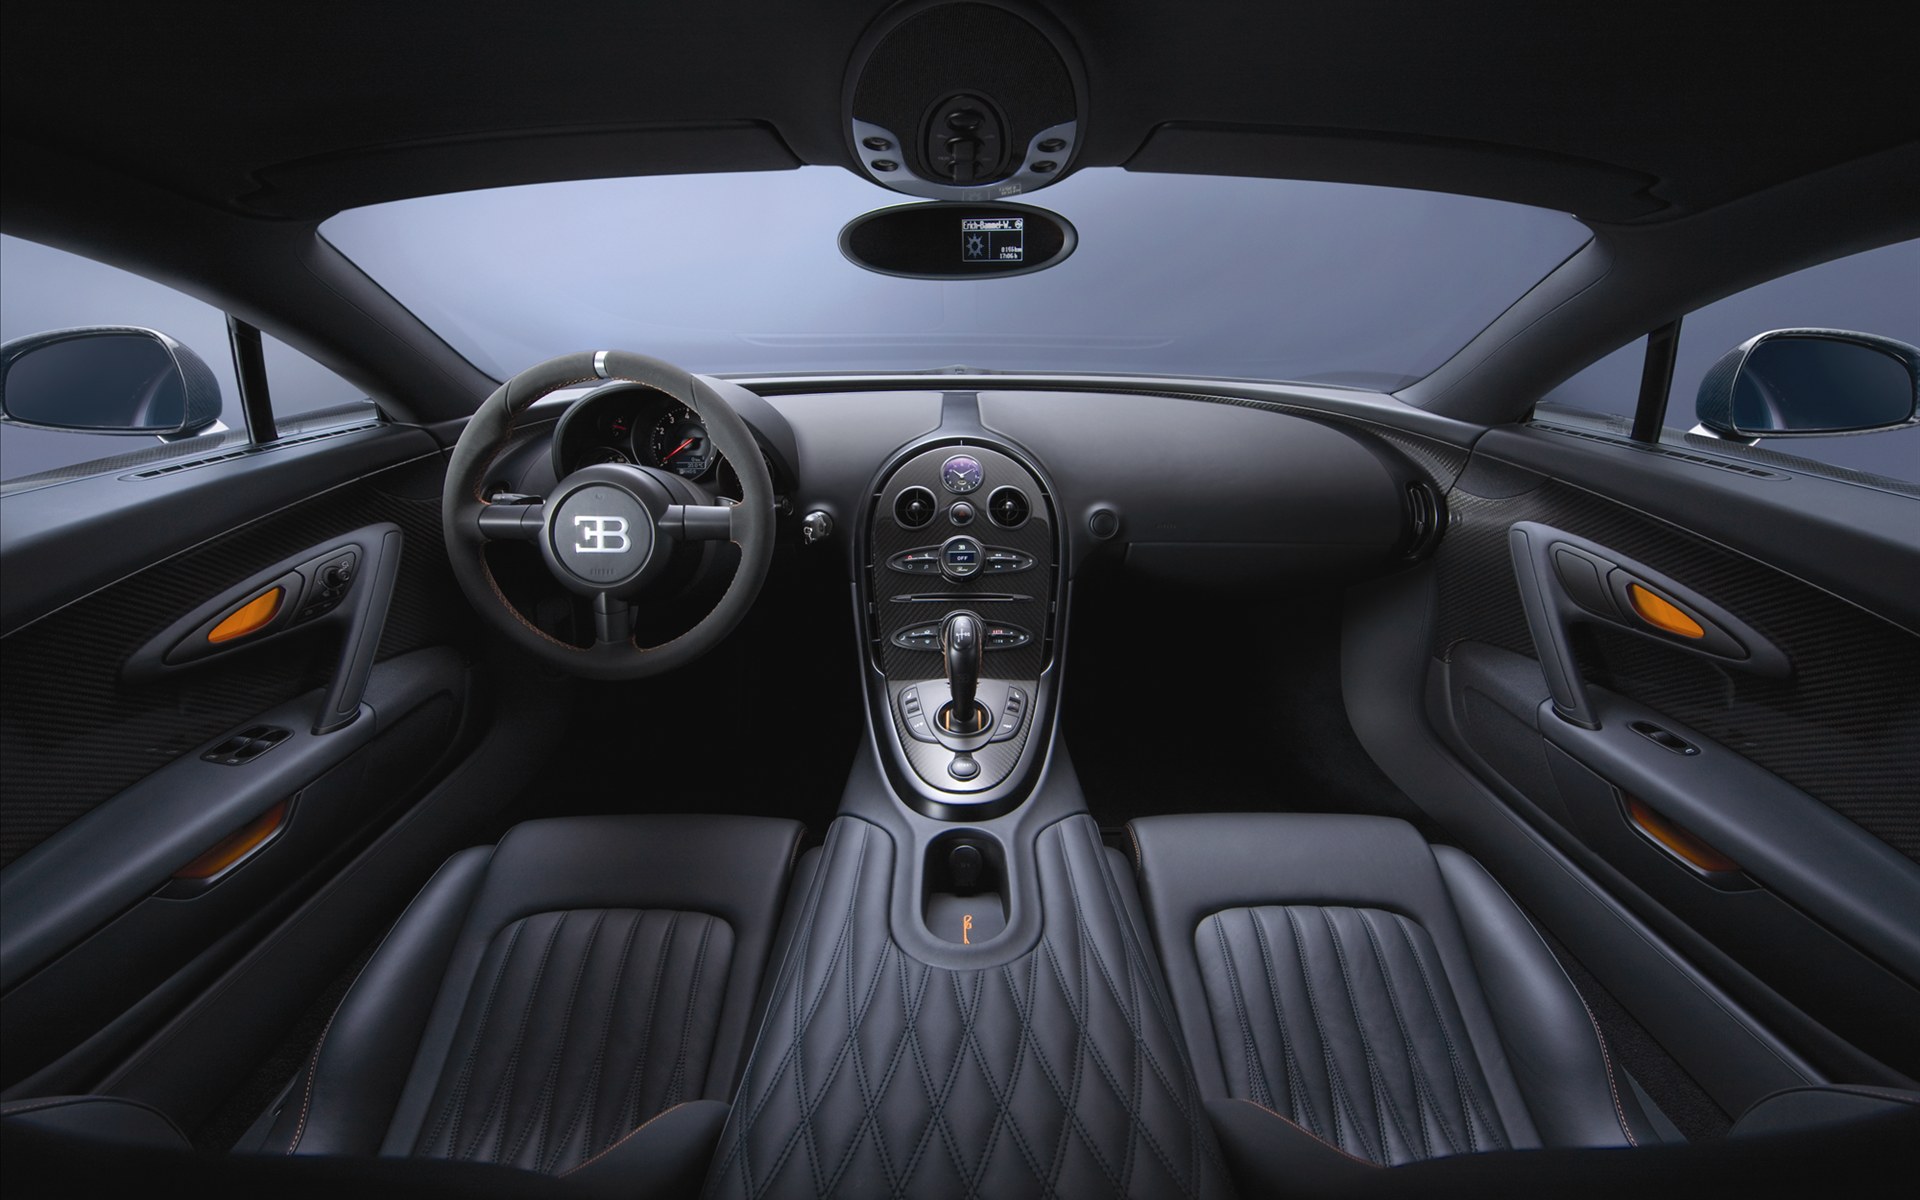 Bugatti Veyron(ӵ) 16.4 Super Sports Car 2011(ֽ6)